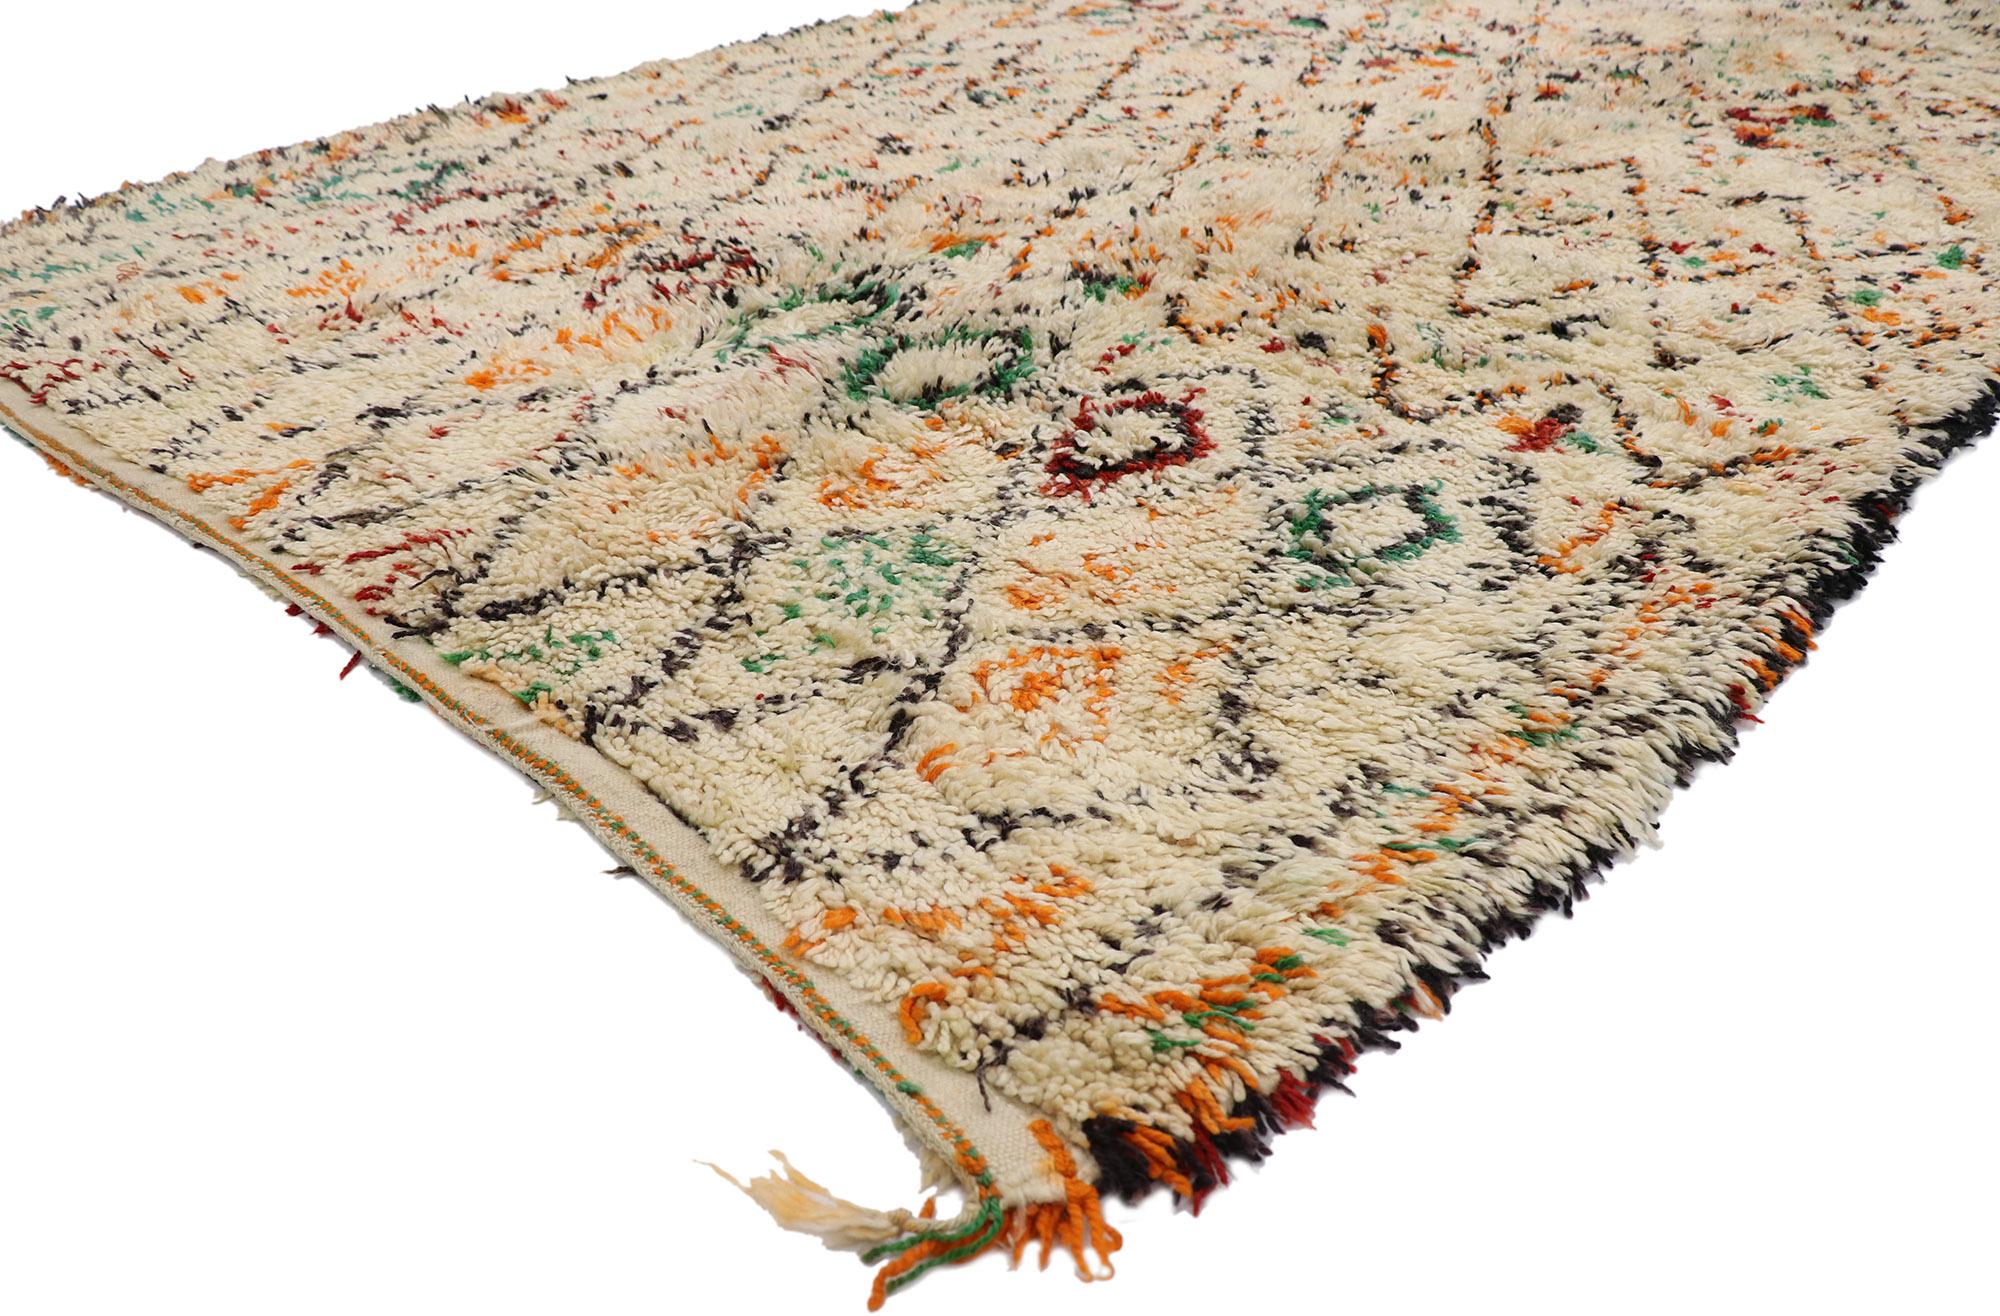 21386 Vintage Berber Beni Ourain marokkanischen Teppich mit Tribal Style 06'00 x 10'10. Mit seiner Schlichtheit, dem weichen Flor und dem Stammesstil ist dieser handgeknüpfte marokkanische Berberteppich Beni Ourain aus Wolle eine fesselnde Vision